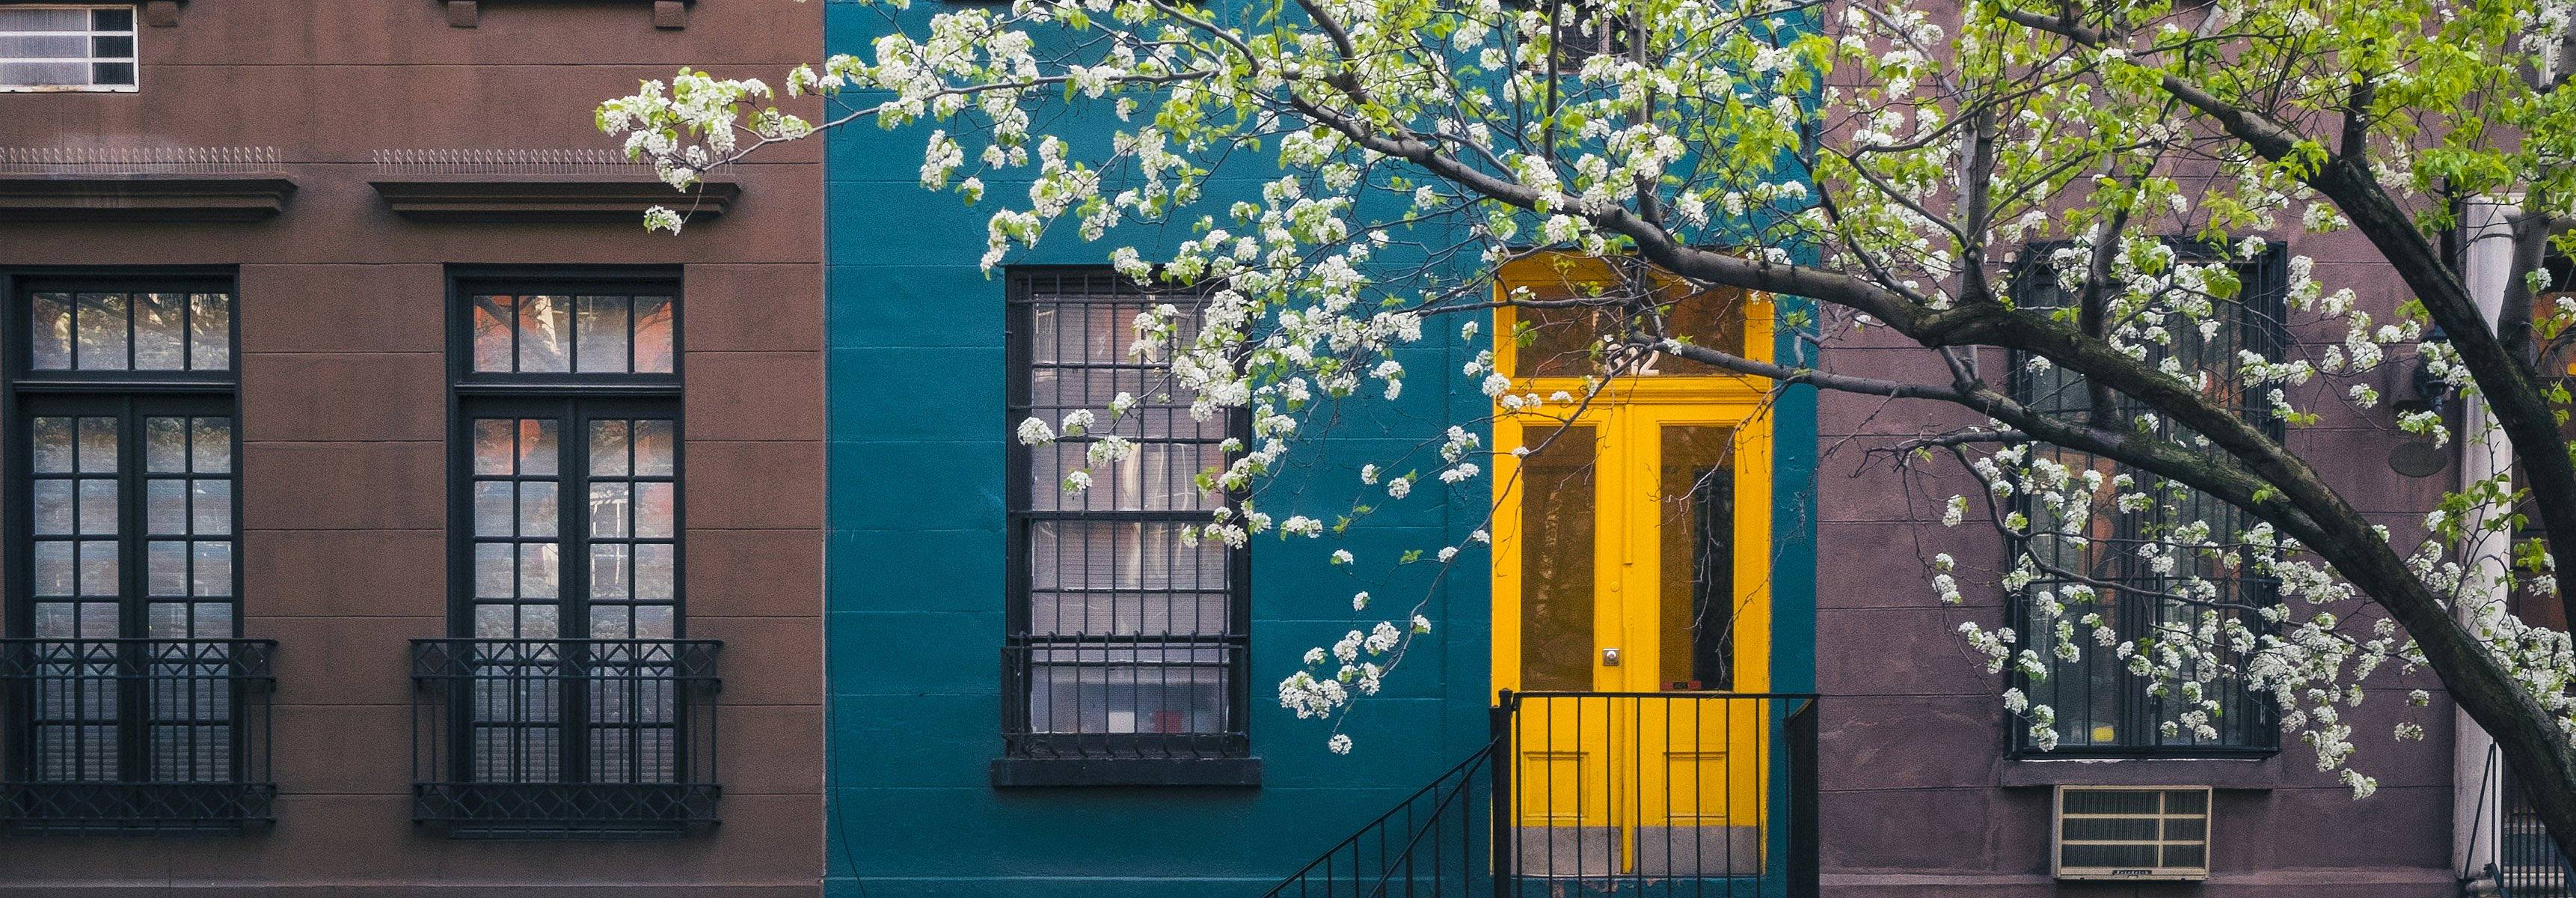 Blühender Baum nahe einem alten Wohnhaus, Manhattan, N.